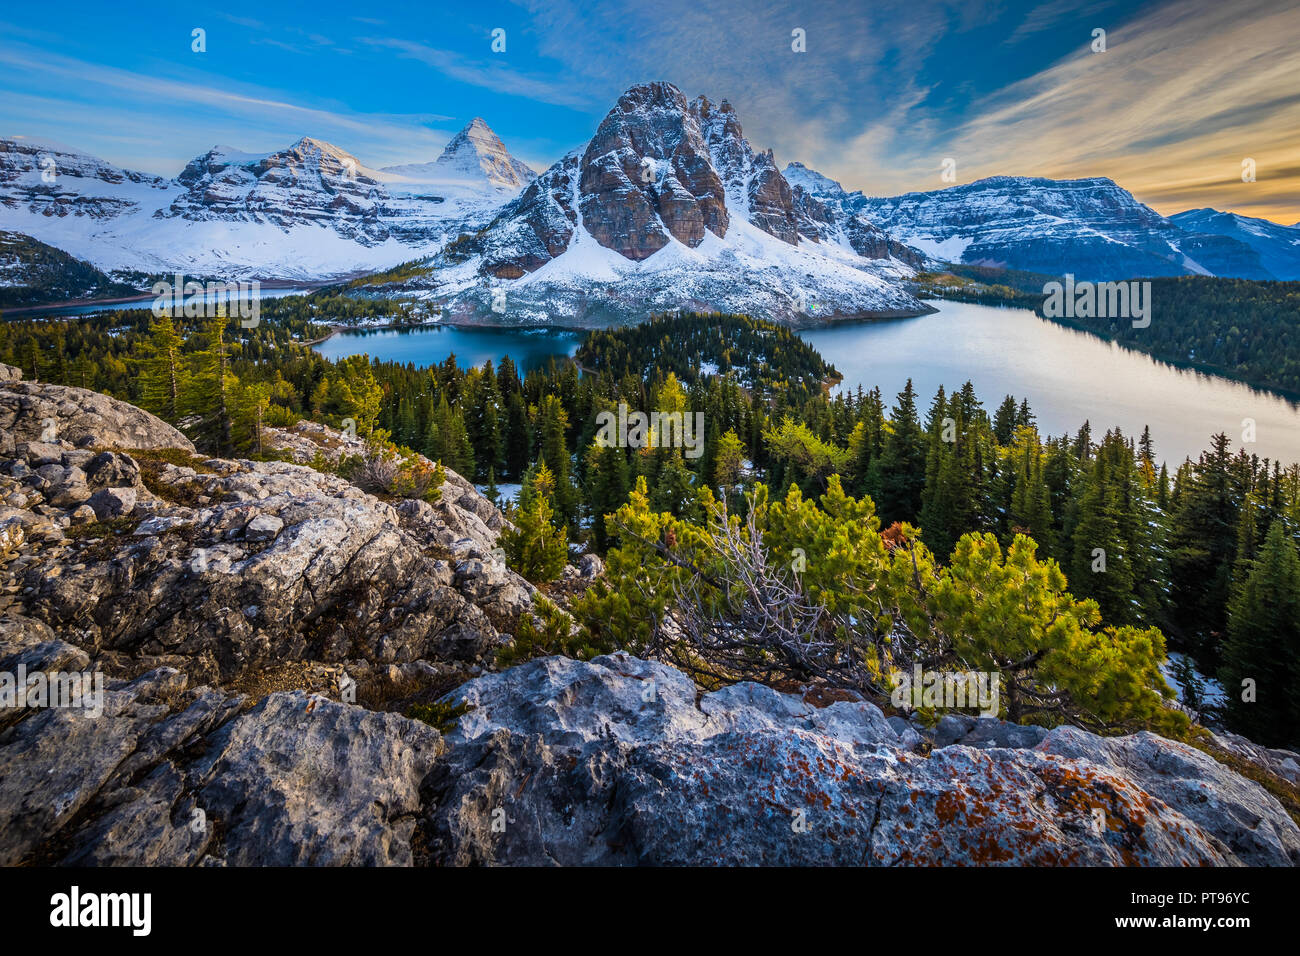 Mount Assiniboine Provincial Park ist ein Provincial Park in British Columbia, Kanada, um Mount Assiniboine gelegen. Der Park wurde 1922 gegründet. S Stockfoto